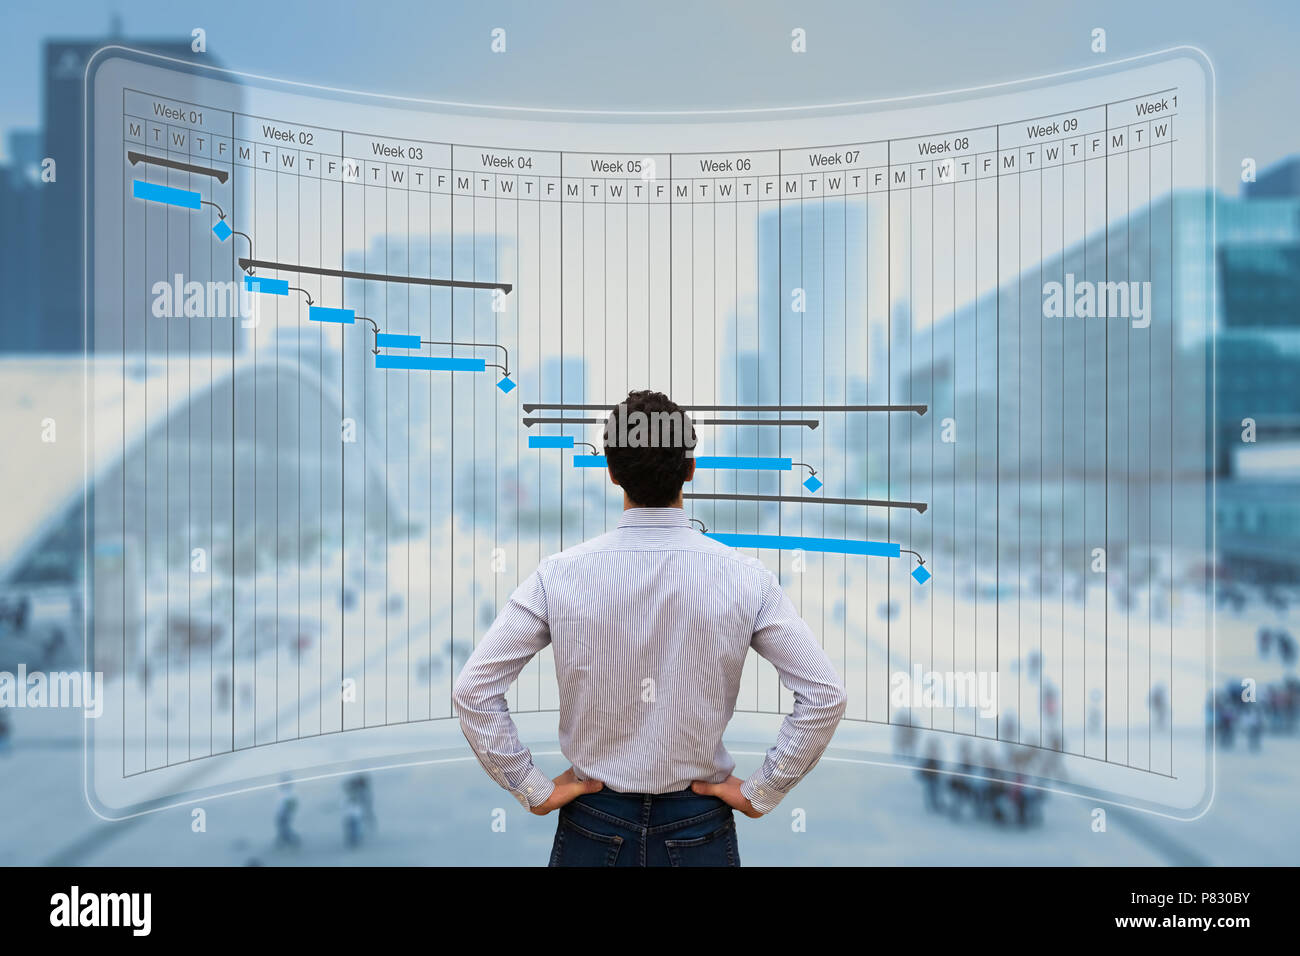 Projekt Manager arbeiten mit Gantt-diagramm planung, tracking Meilenstein und die zu erbringenden Leistungen und Update-aufgaben Fortschritte, Terminplanung Fähigkeiten, auf virtuellen scre Stockfoto